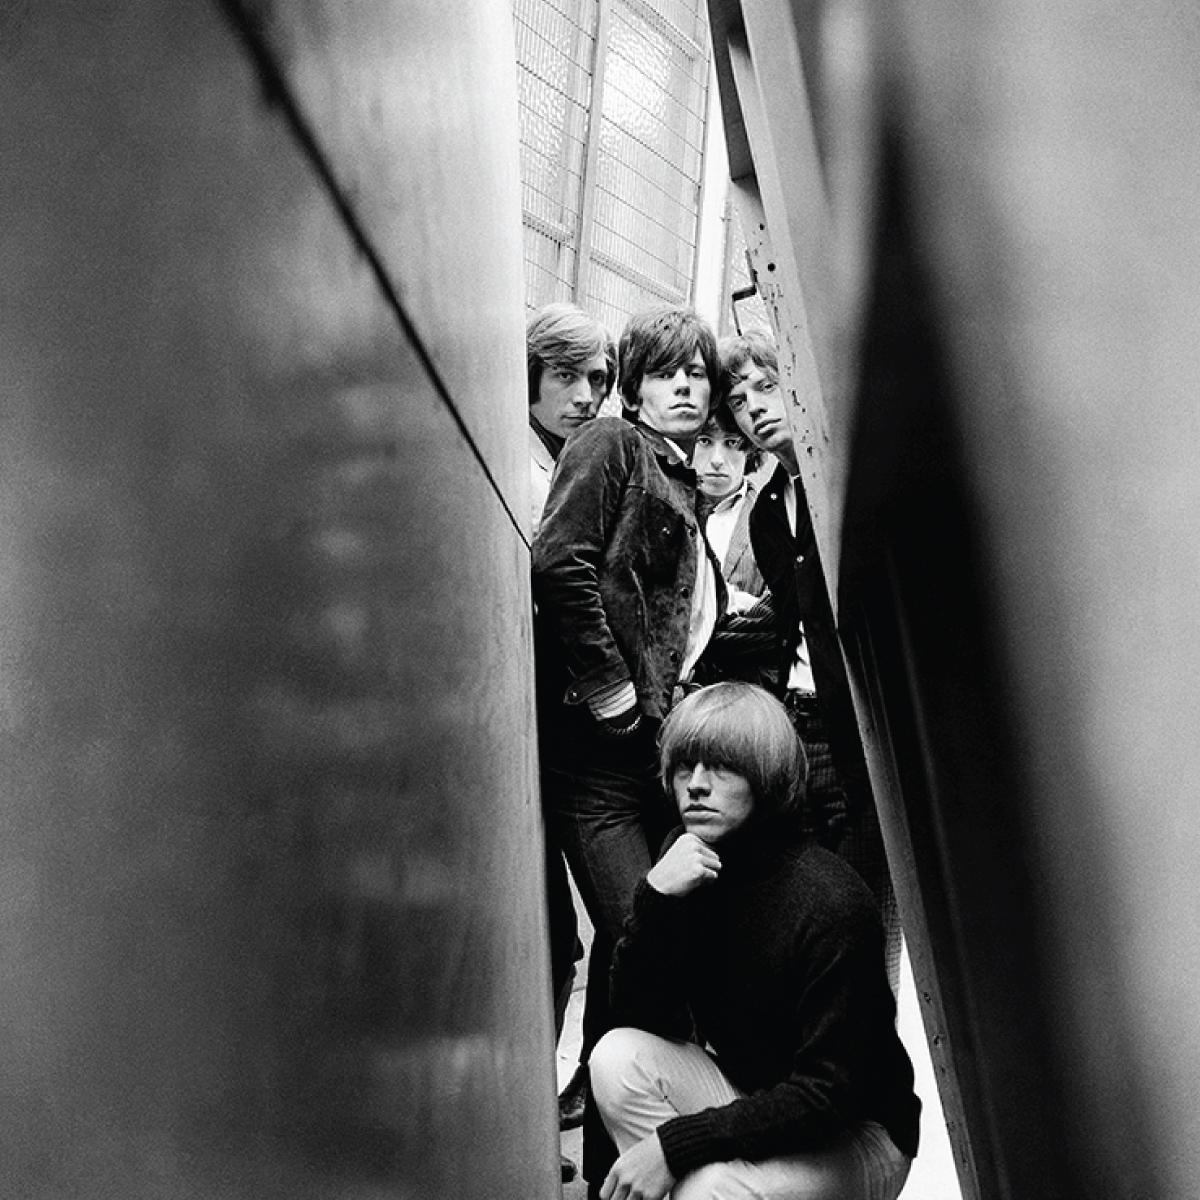 Die Rolling Stones, aufgenommen in London im Jahr 1965 von Gered Mankowitz. Dieses Bild wurde für das Cover von Out Of Our Heads verwendet. Mit Mick Jagger, Keith Richards, Charlie Watts, Bill Wyman und Brian Jones.

Erhältlich in den folgenden